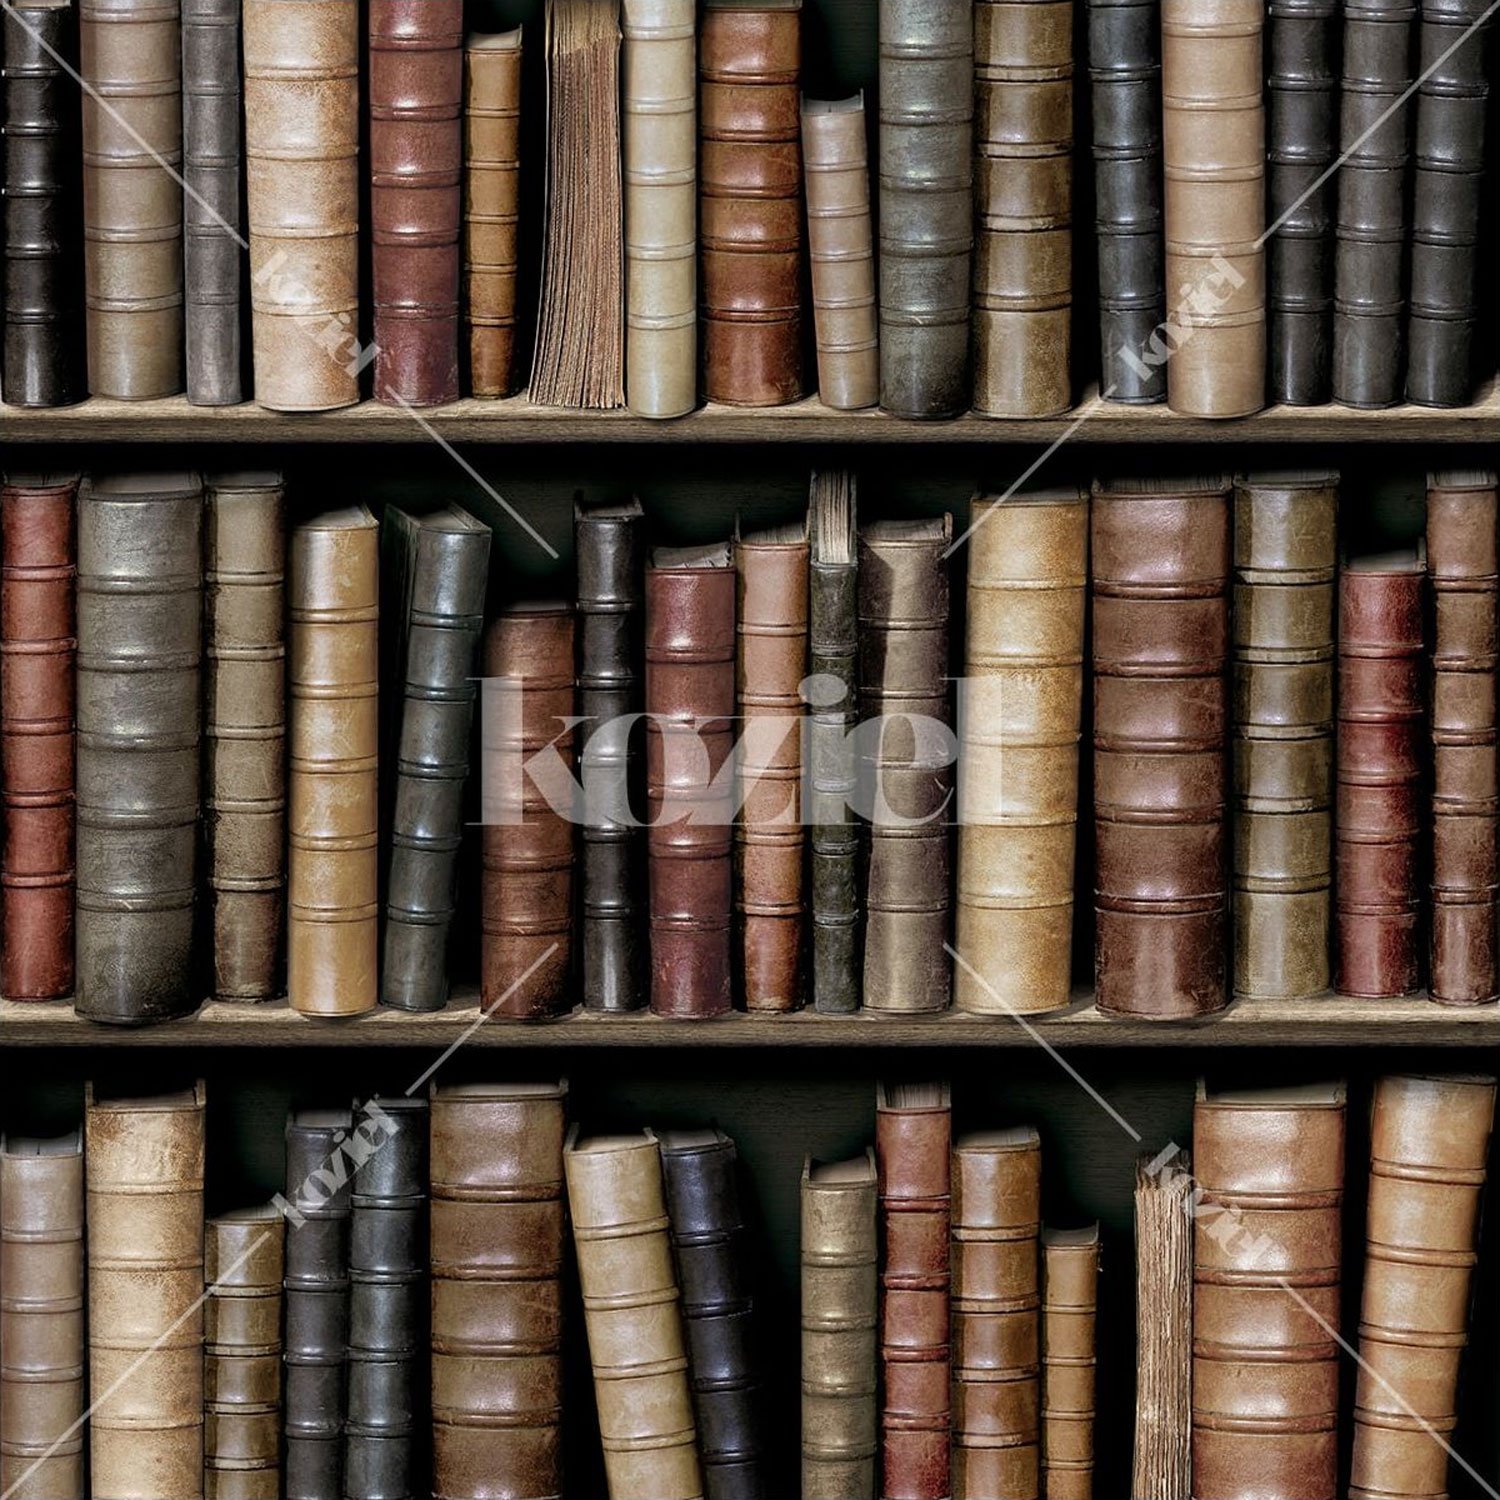 Tapete "Bibliothek alte Bücher" von Koziel aus Frankreich 1